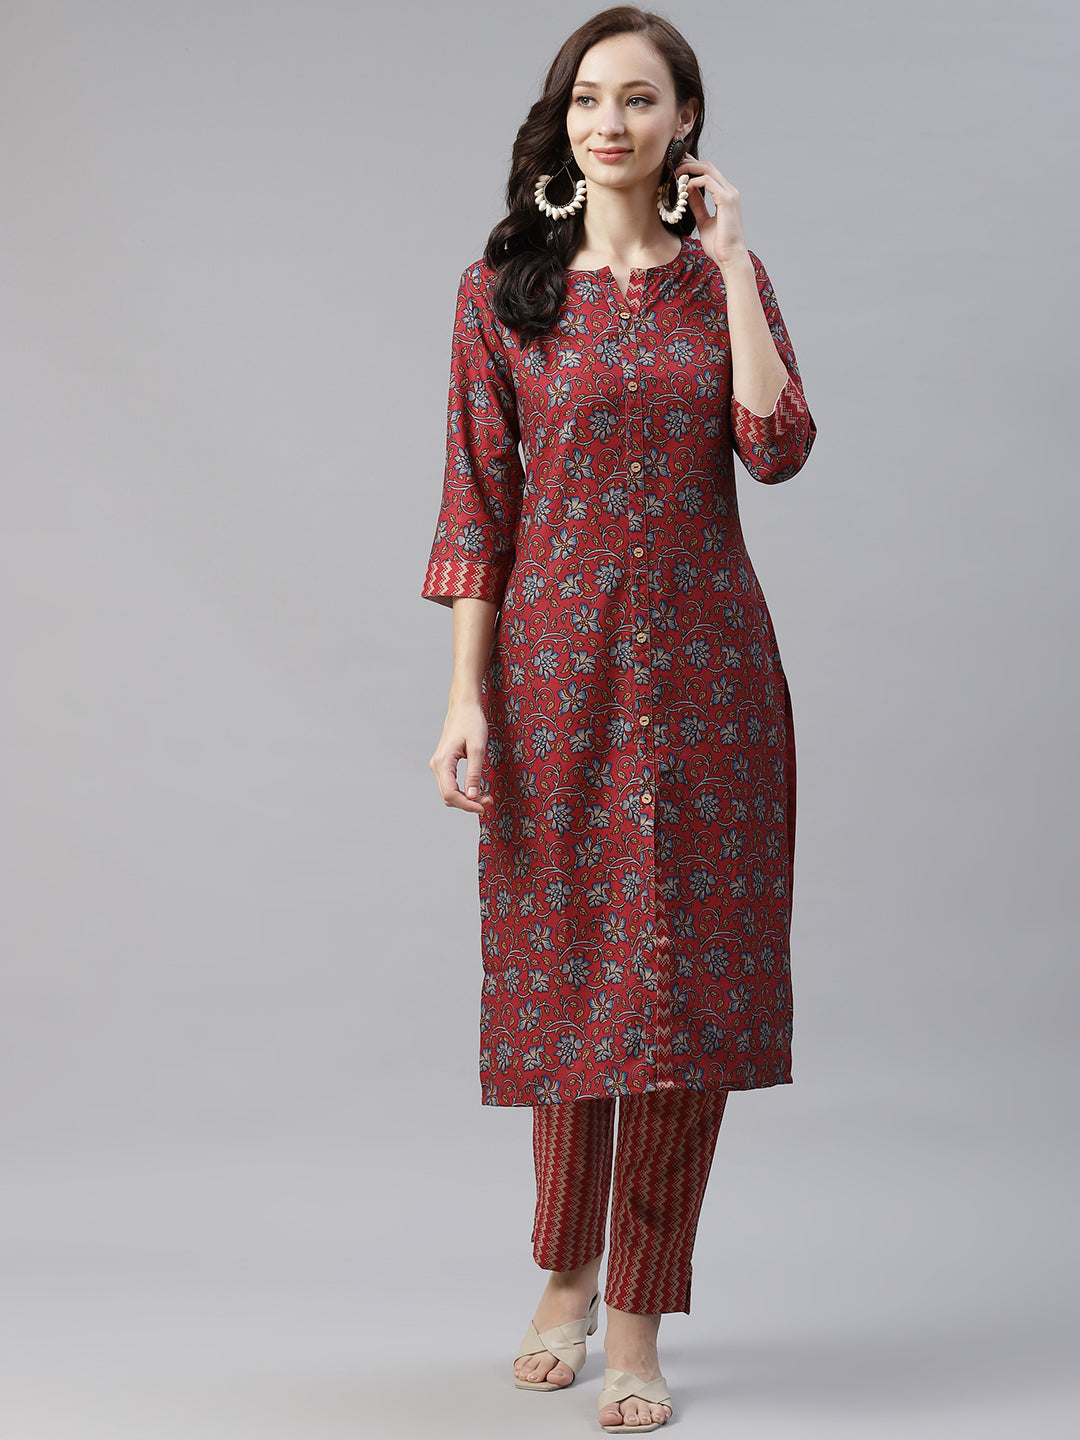 Women's Maroon Printed Kurta And Pants by Ziyaa-(2pcs set)